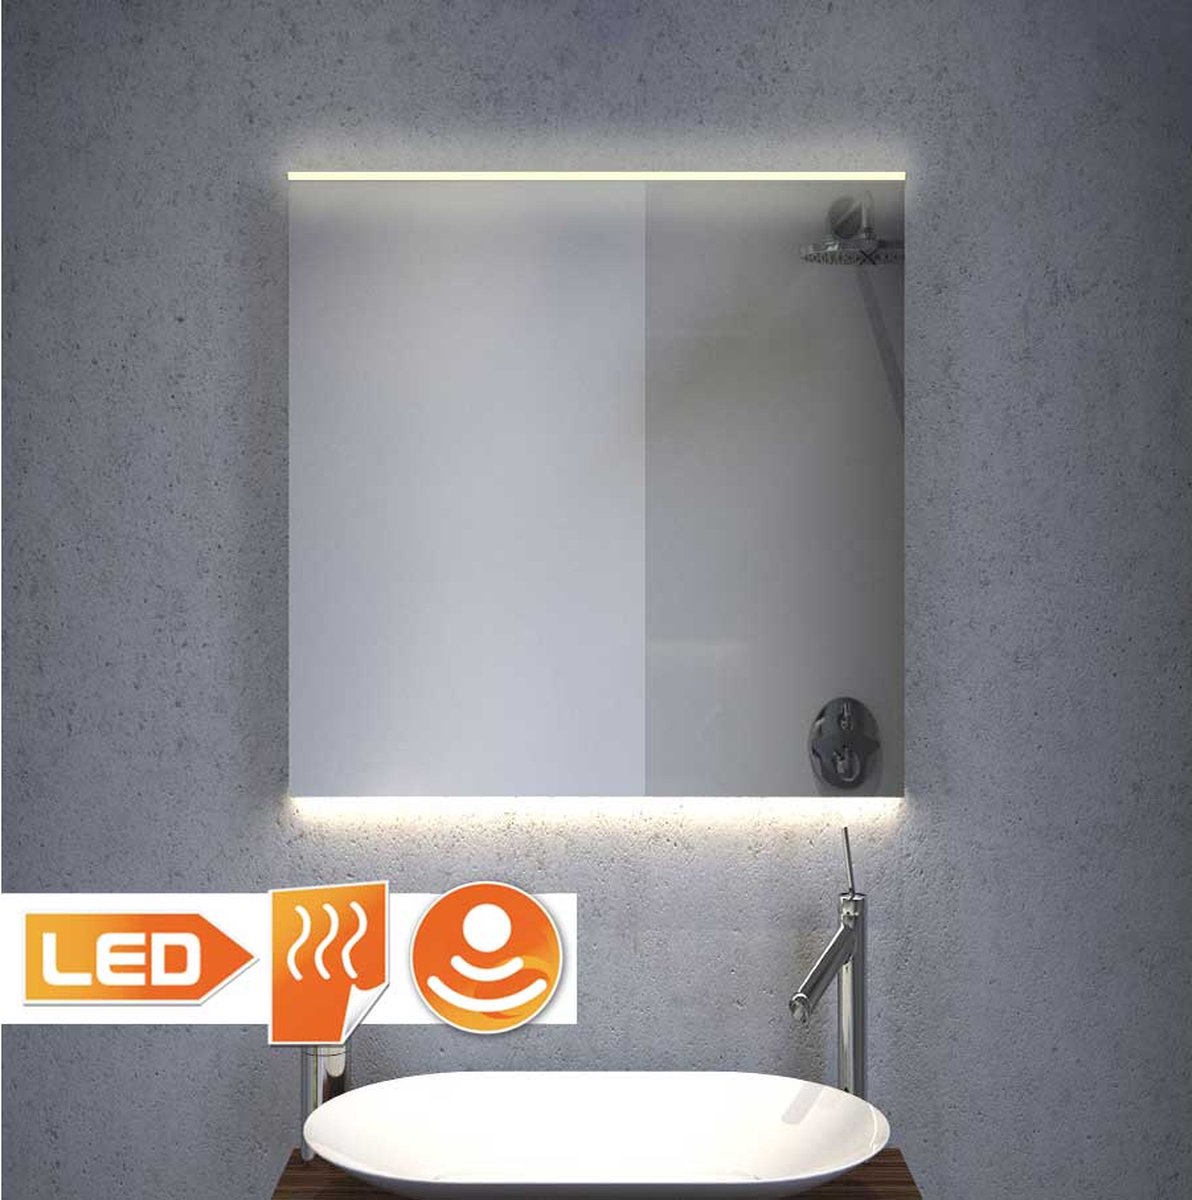 Badkamerspiegel met LED verlichting, verwarming, sensor en dimfunctie 60x70 cm